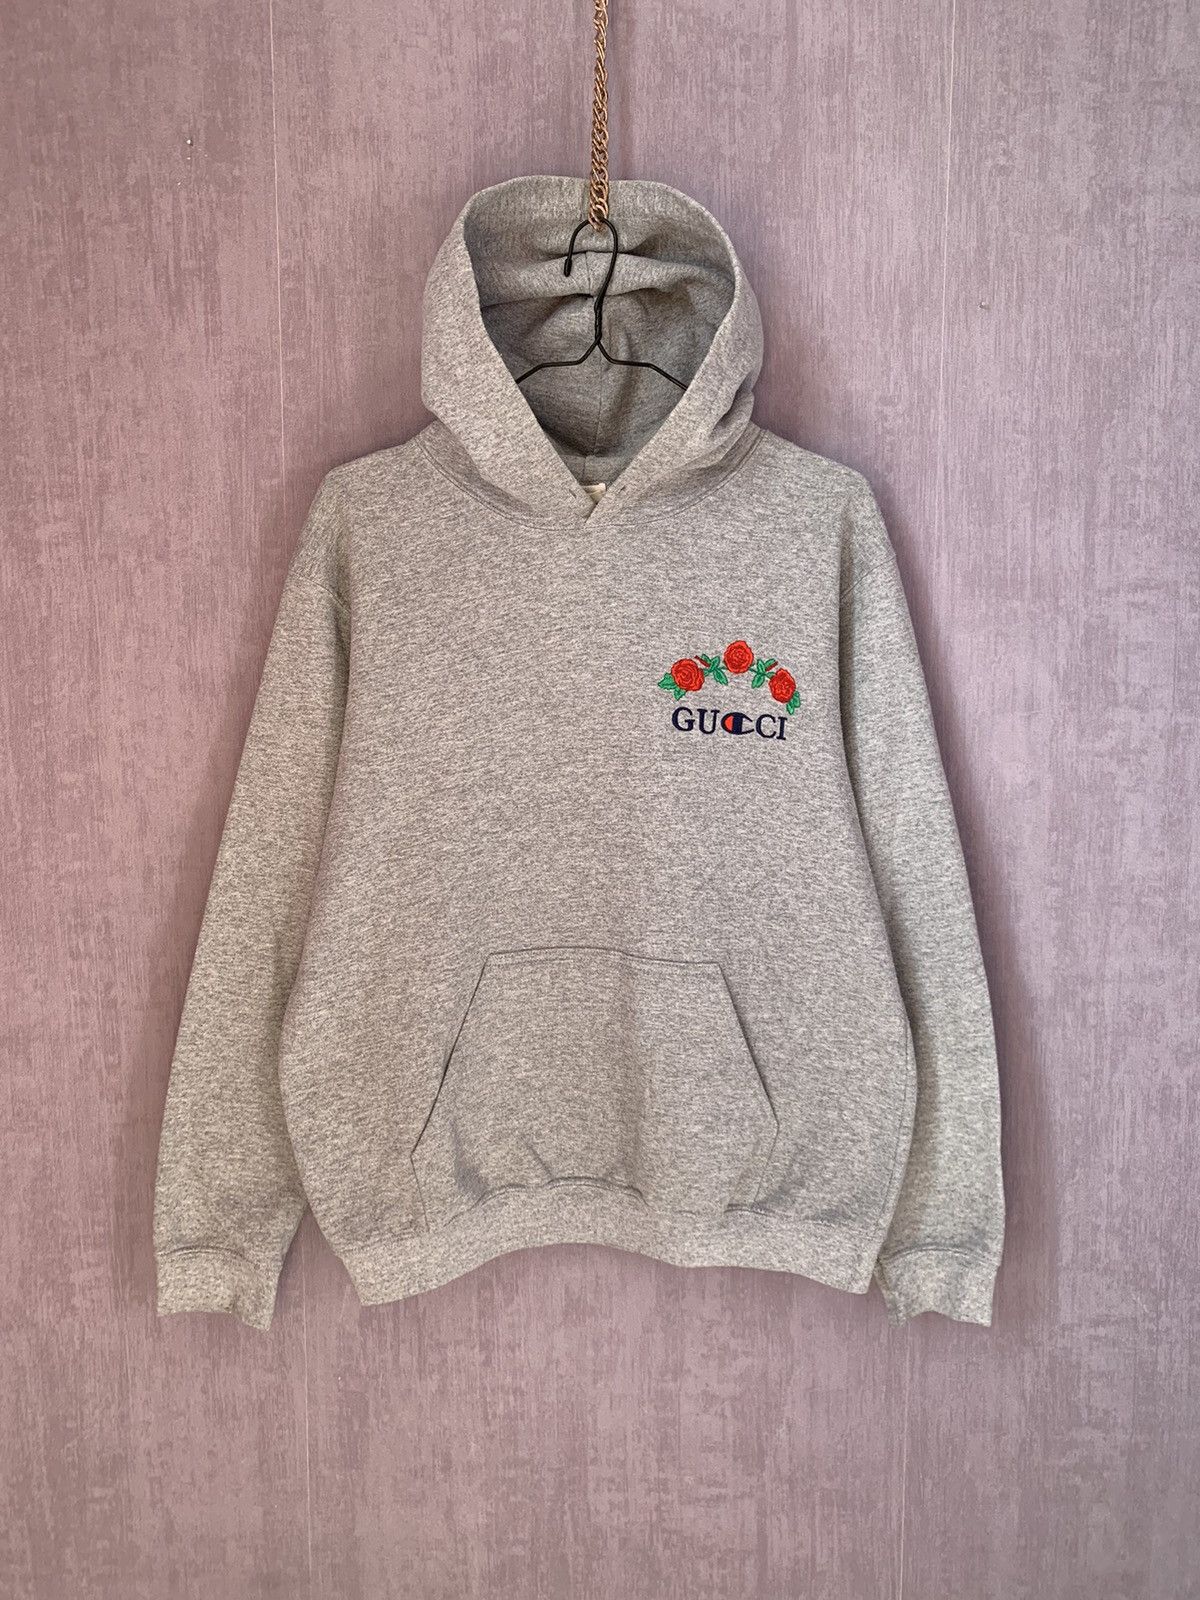 Custom X Gucci hoodie by Nirui | Grailed